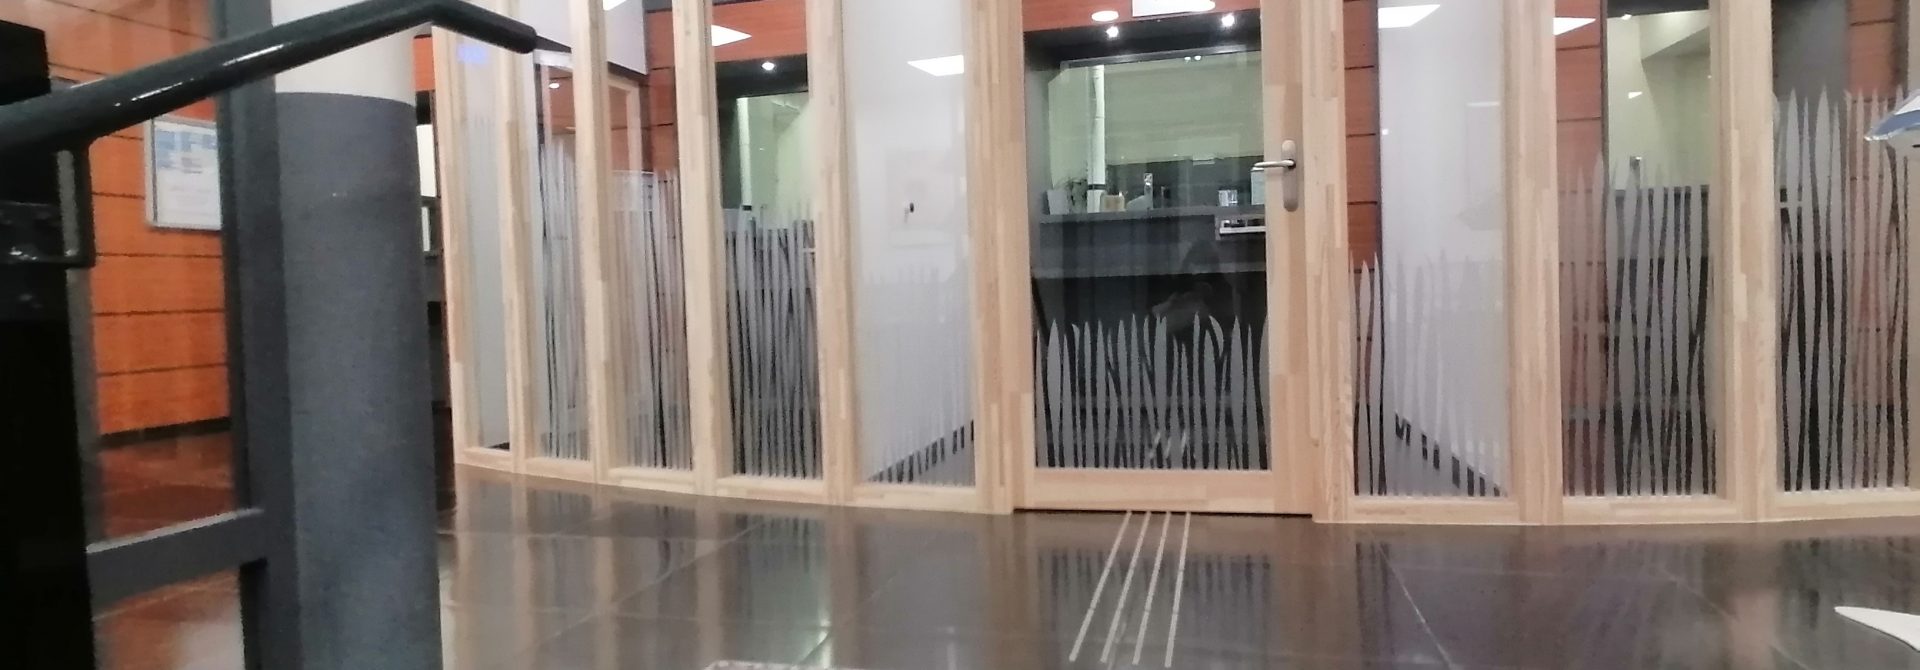 Les guichets aux portes transparentes et encadrementsen bois clair